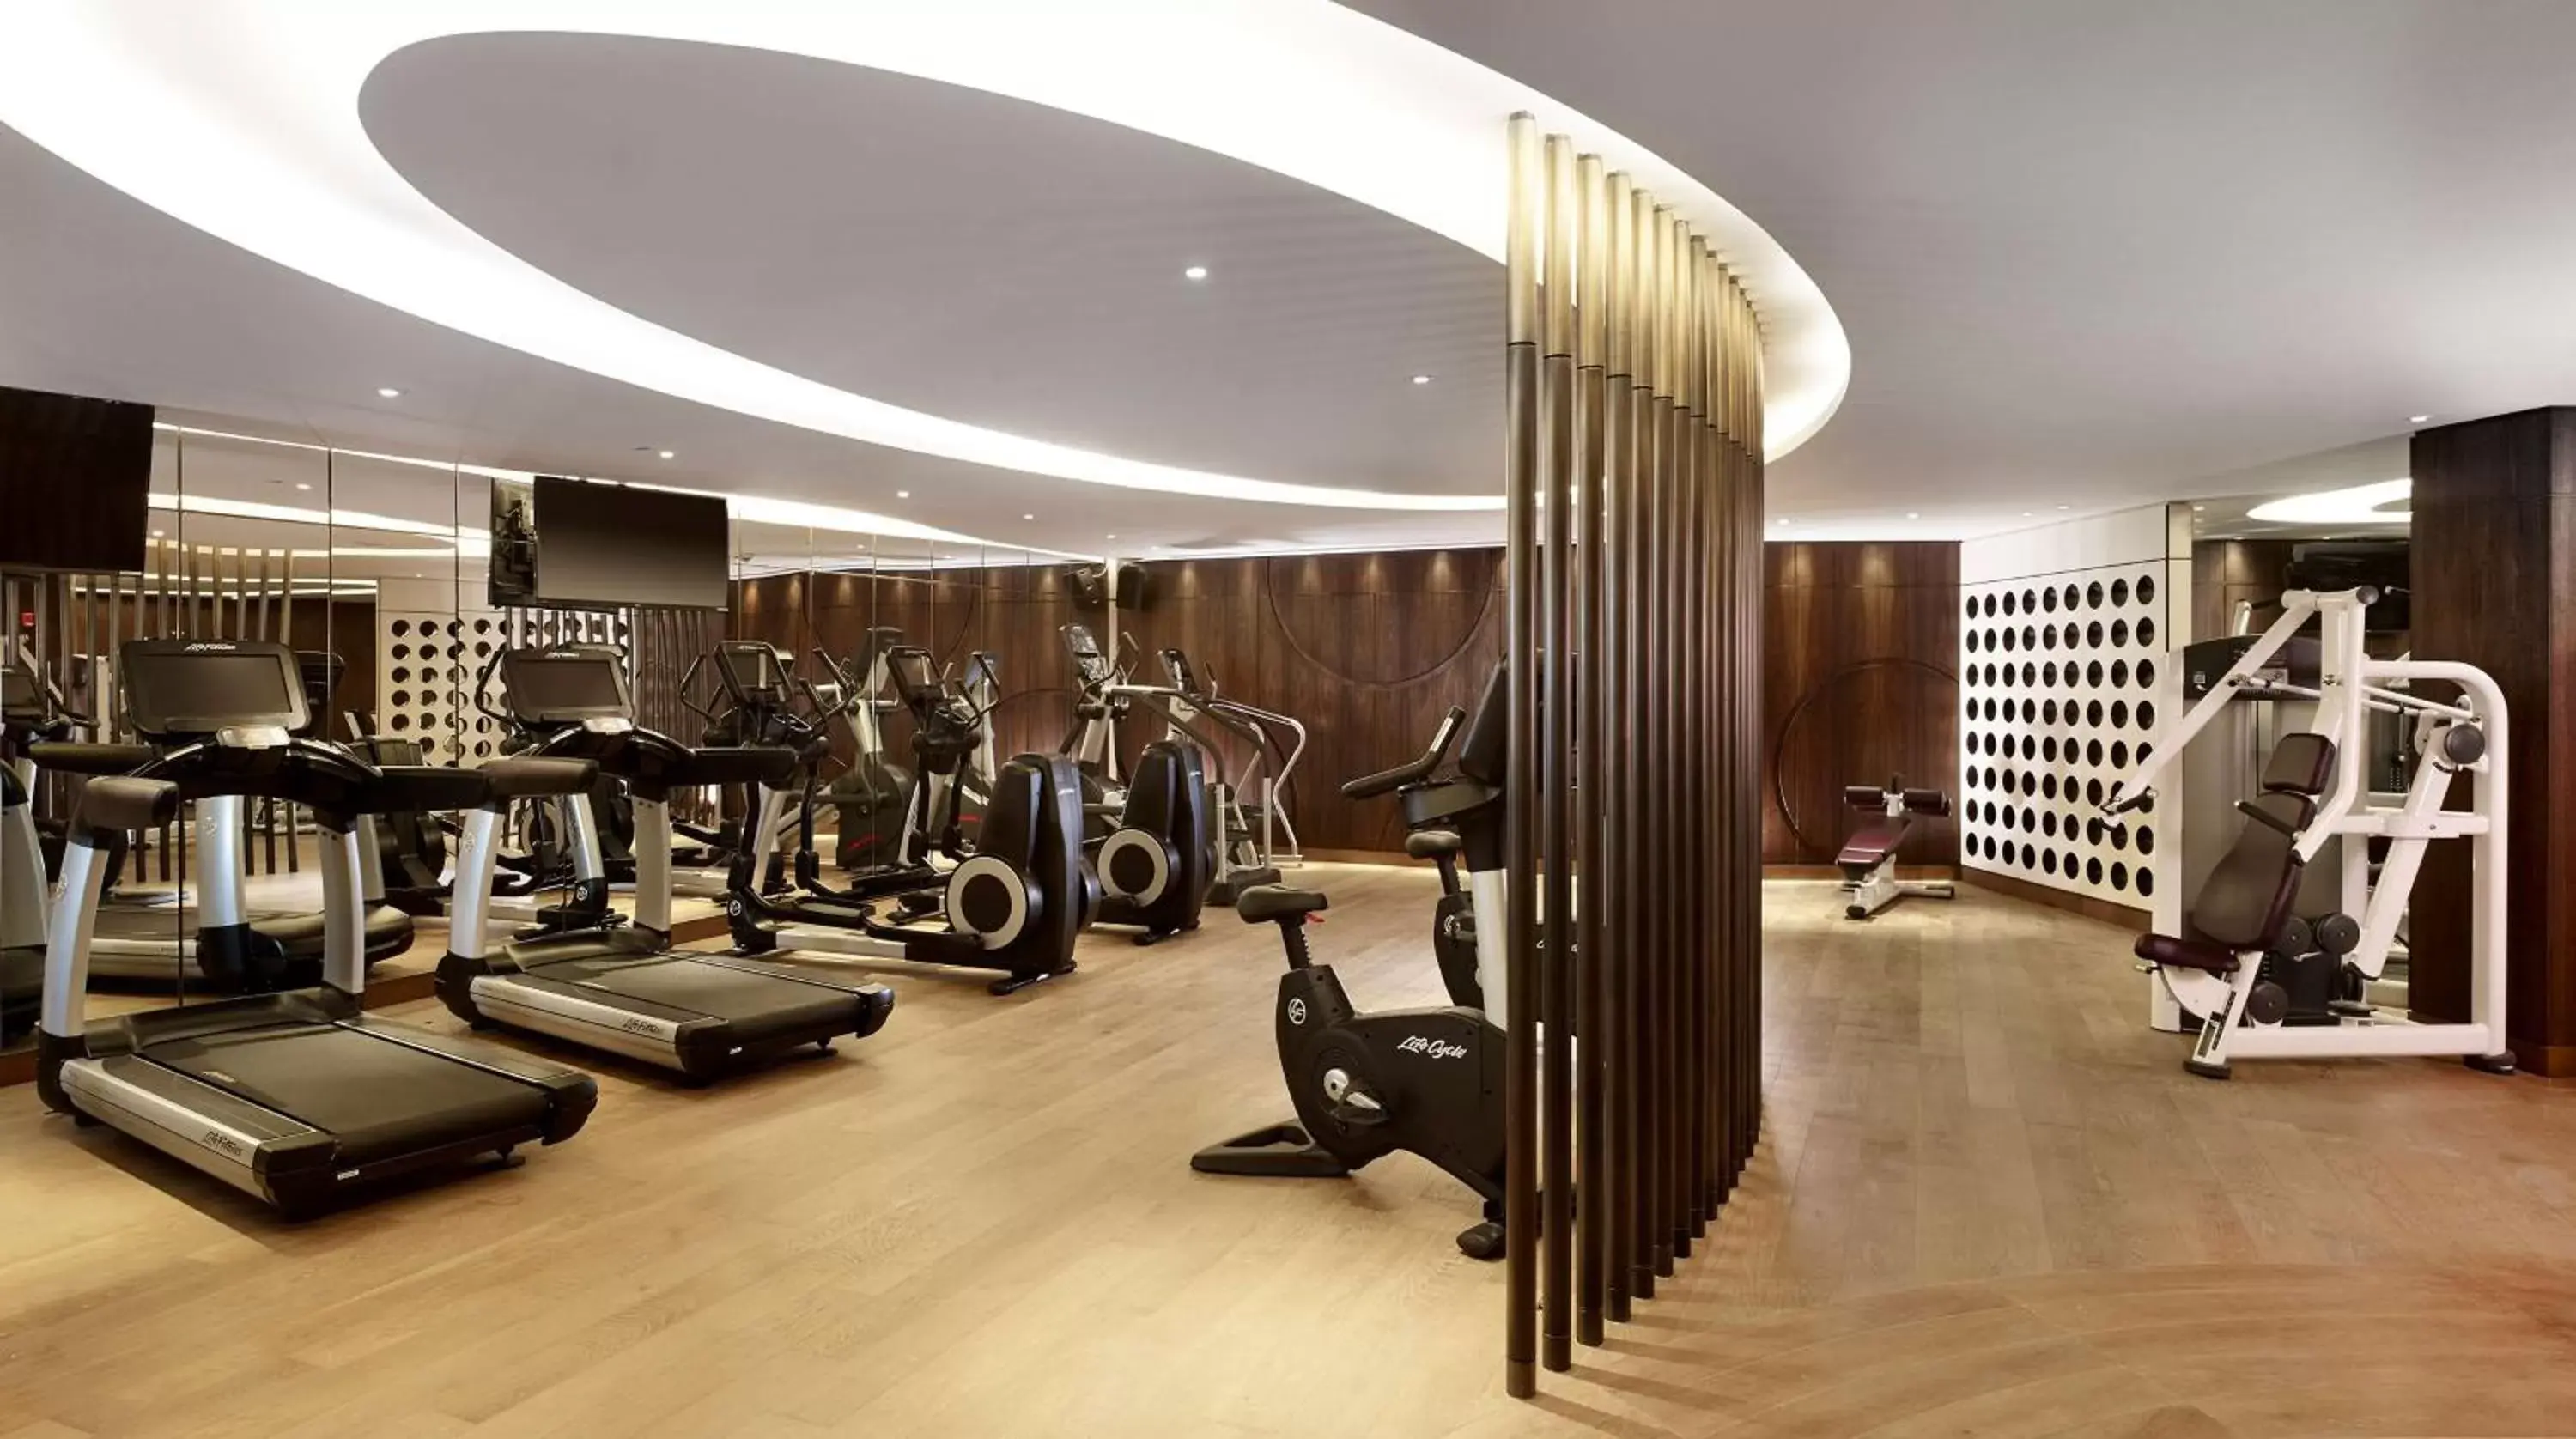 Fitness centre/facilities in Hyatt Regency Istanbul Atakoy